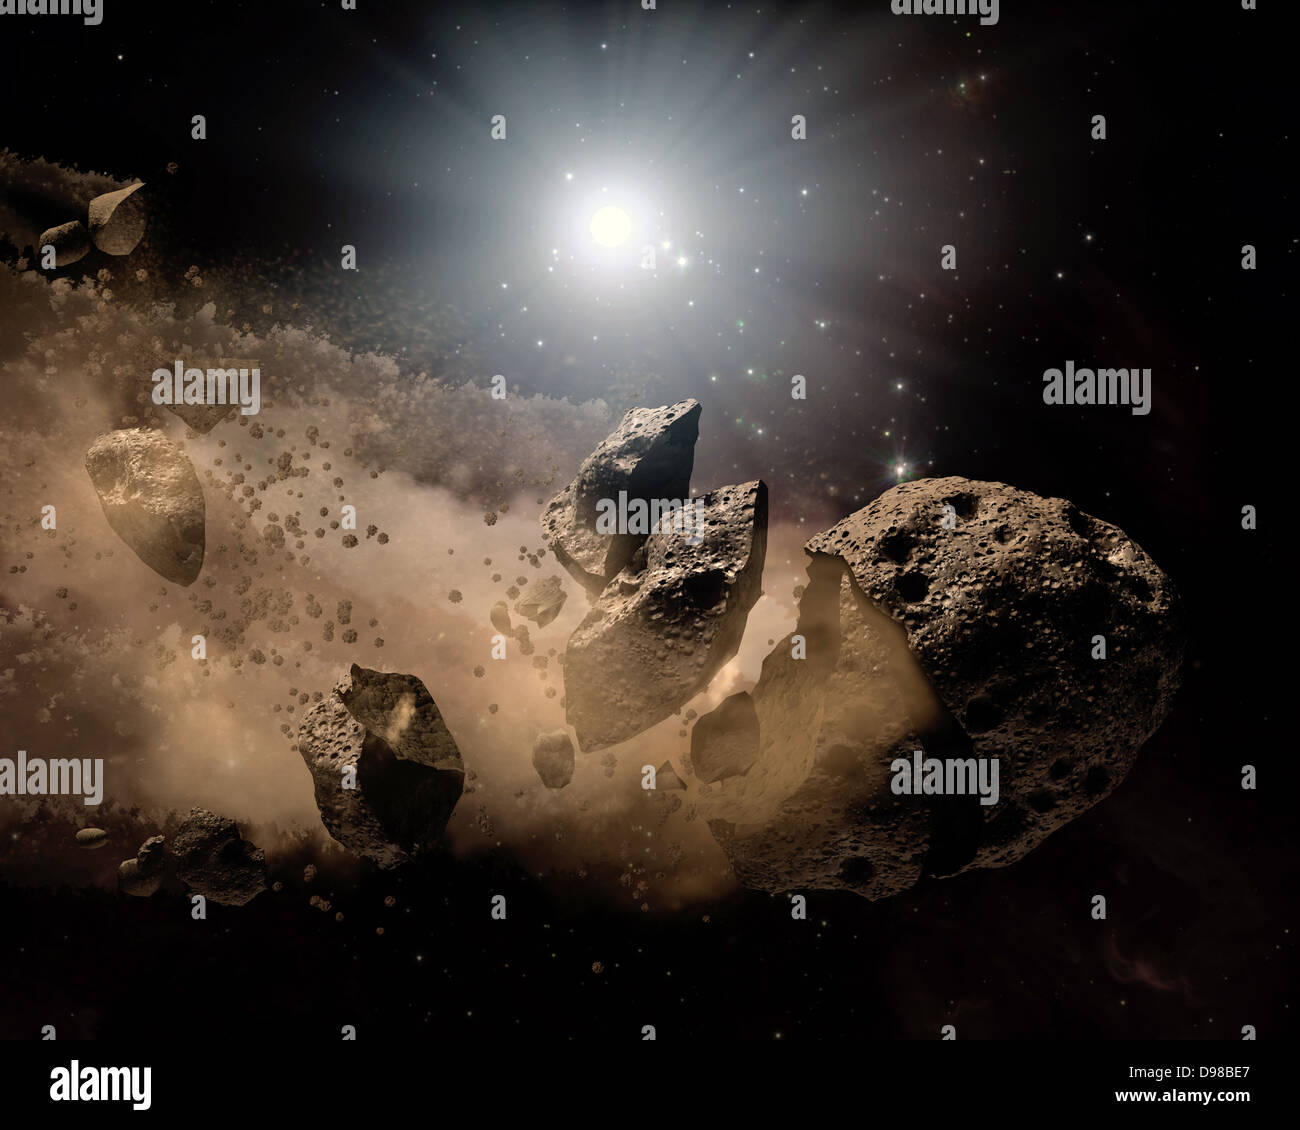 NASA il telescopio spaziale Spitzer insieme i suoi occhi a infrarossi su polveroso dei resti di shredded asteroidi attorno a diverse stelle morte. Foto Stock